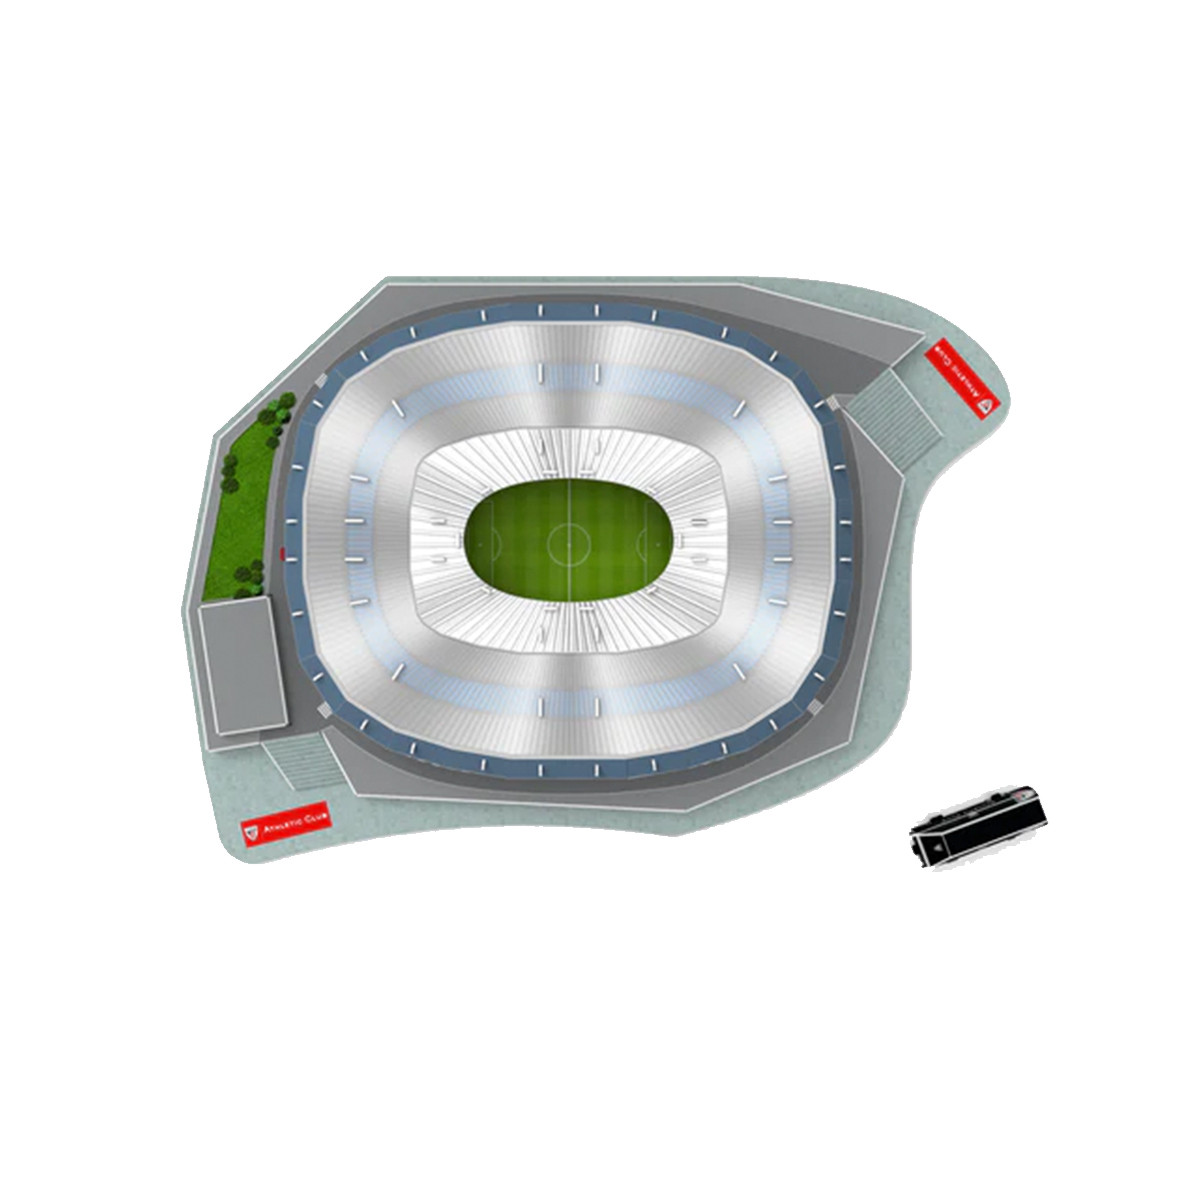 Galatasaray Stade 3D Puzzle – Découvrez le légendaire stade du